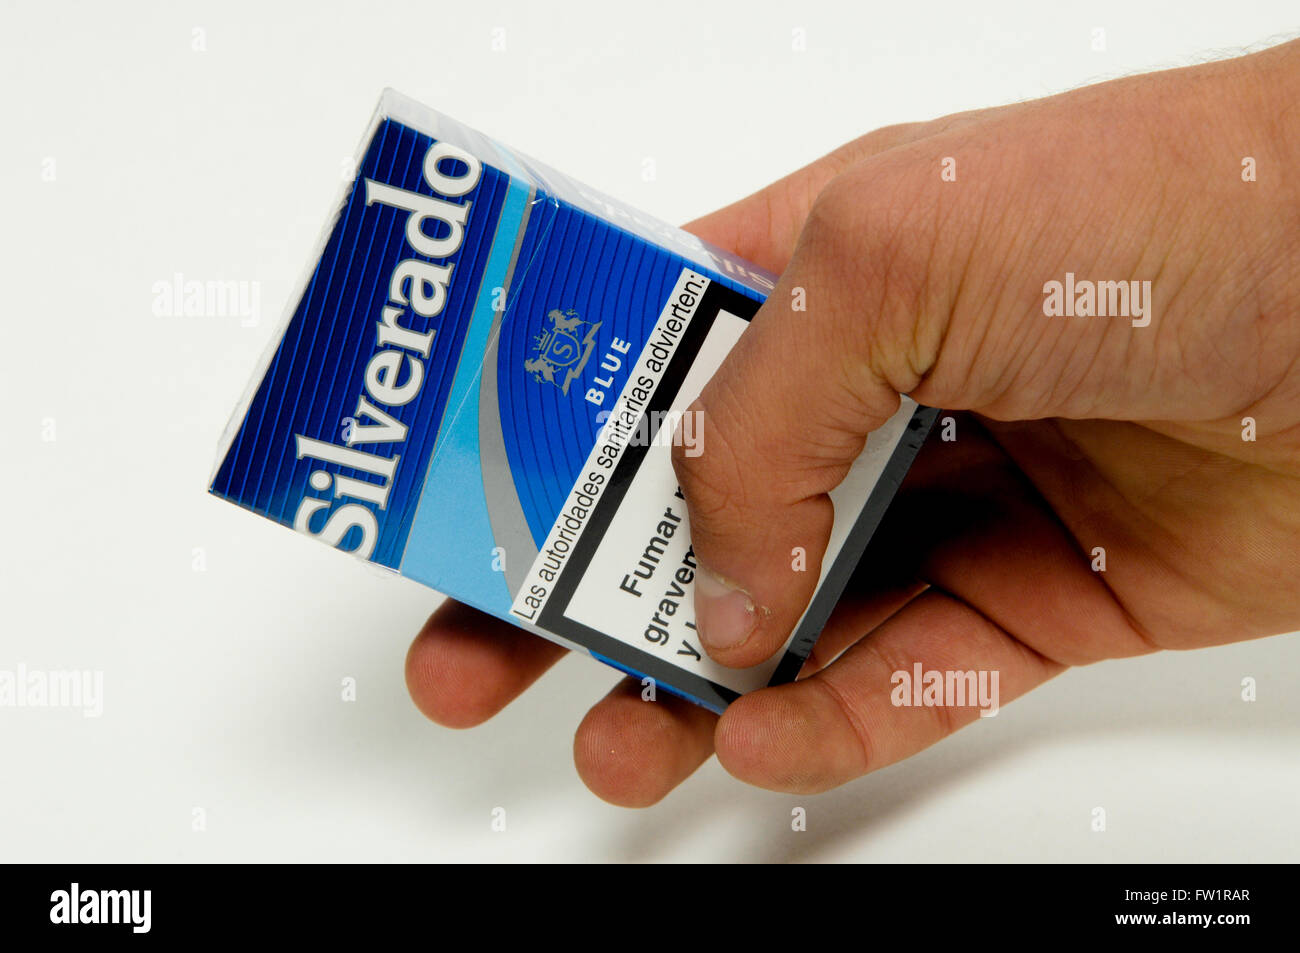 Silverado American Blend Blue Cigarettes Stock Photo